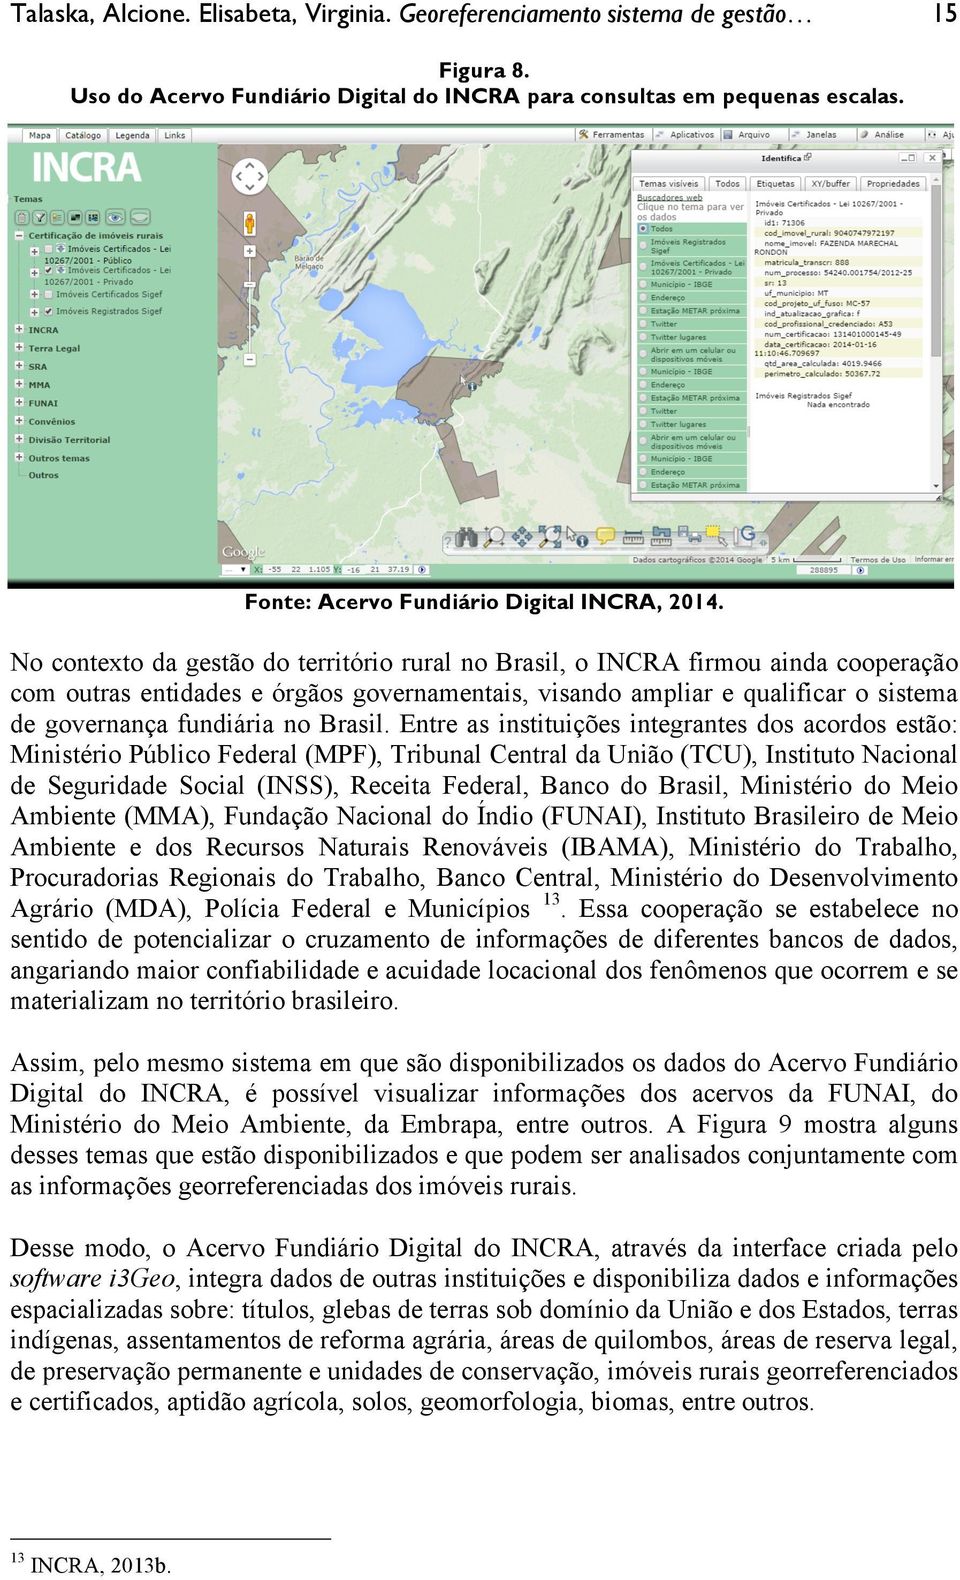 No contexto da gestão do território rural no Brasil, o INCRA firmou ainda cooperação com outras entidades e órgãos governamentais, visando ampliar e qualificar o sistema de governança fundiária no